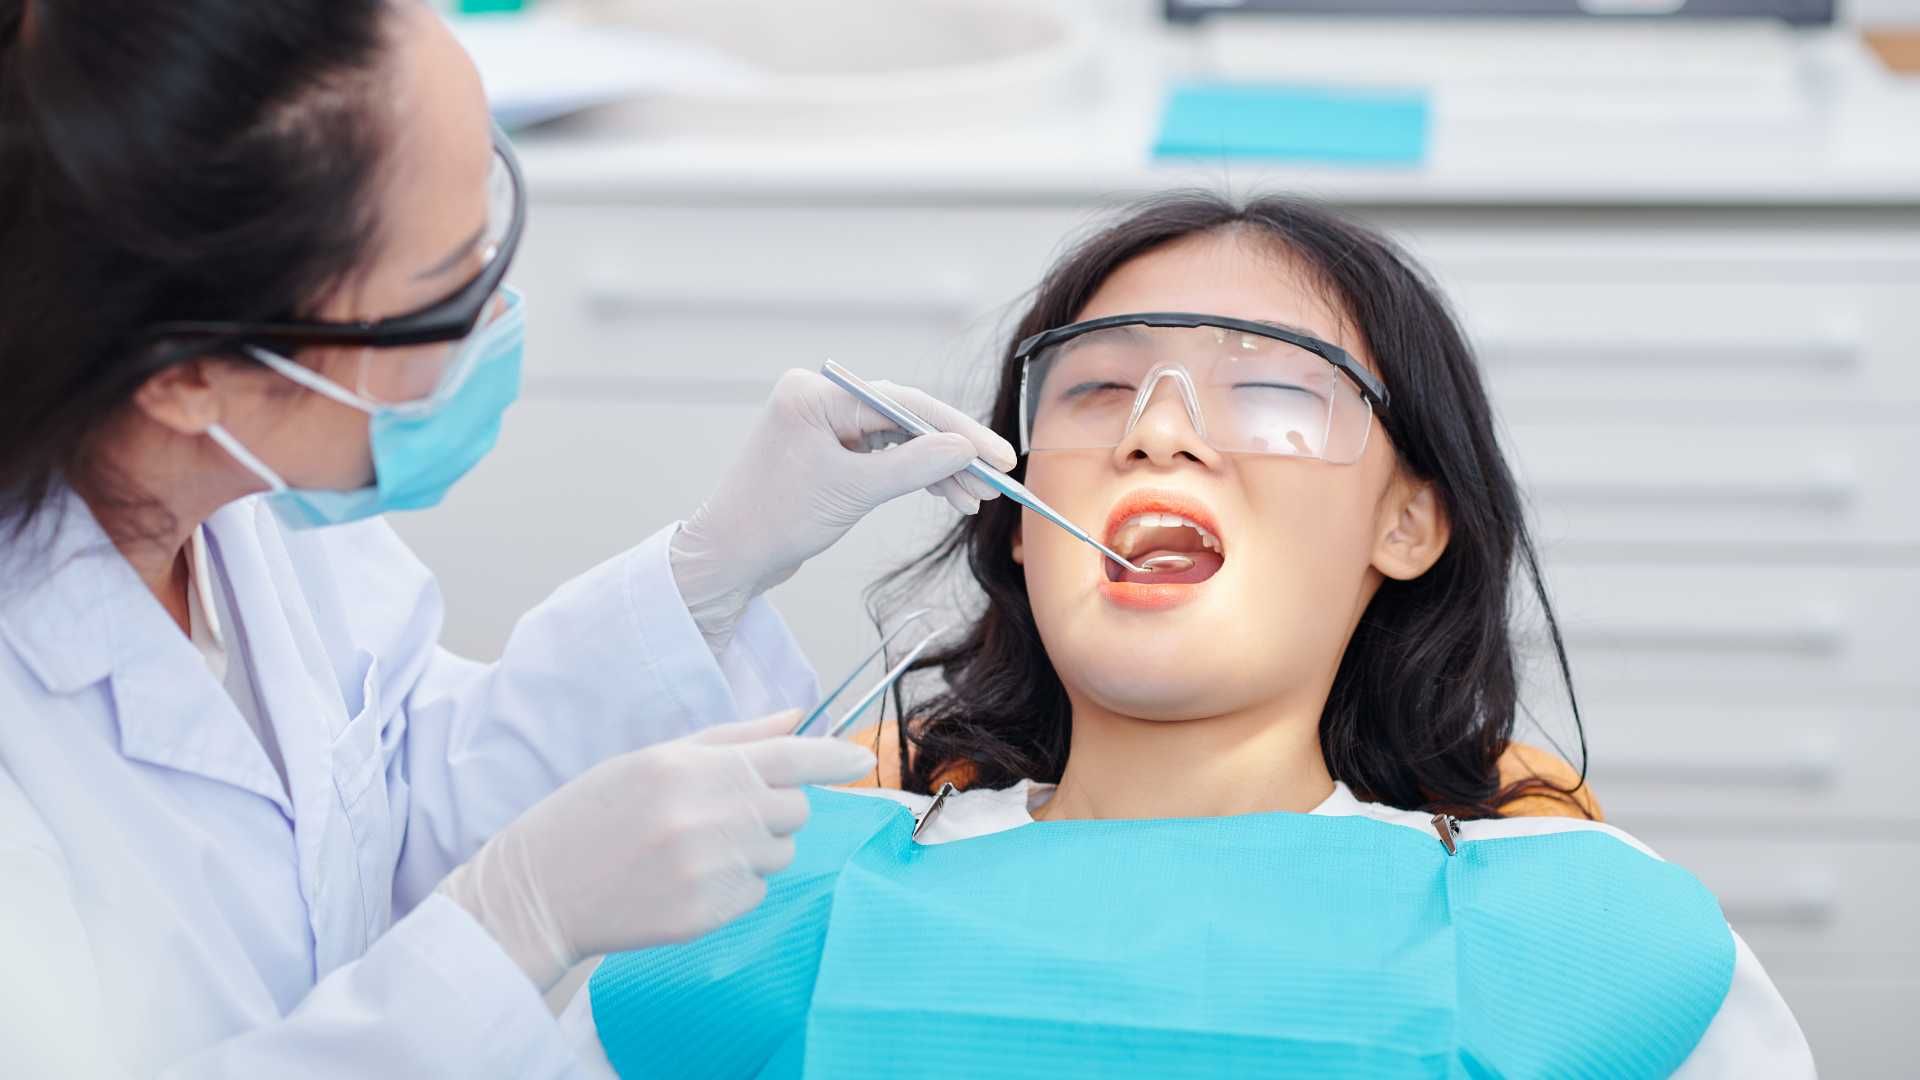 عصب کشی دندان 3 کانال دکتر کاملیا علیجانی در تهران 1